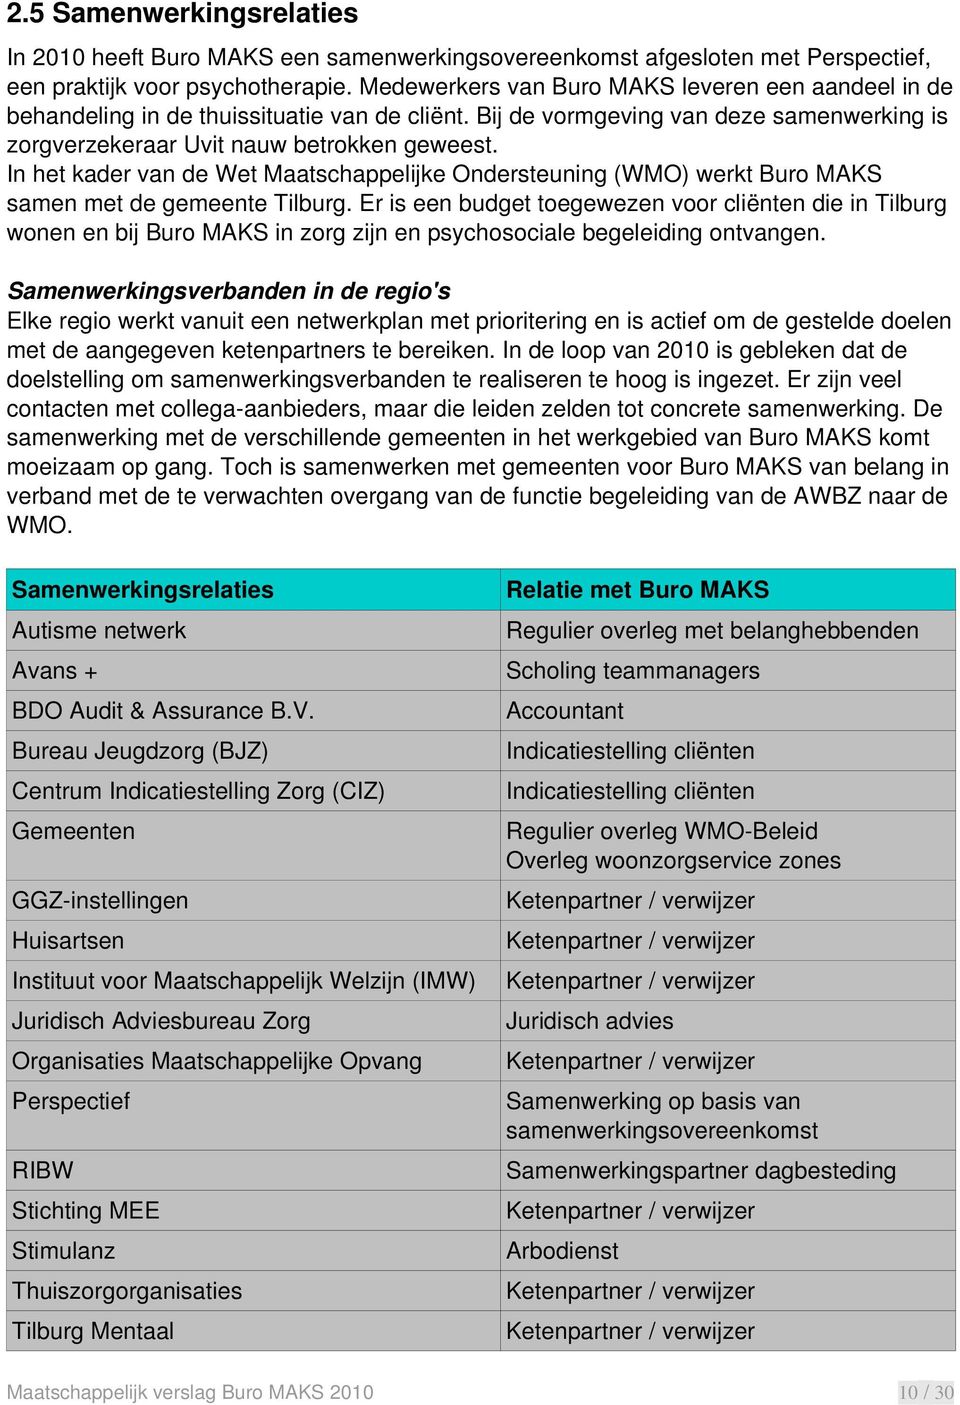 In het kader van de Wet Maatschappelijke Ondersteuning (WMO) werkt Buro MAKS samen met de gemeente Tilburg.